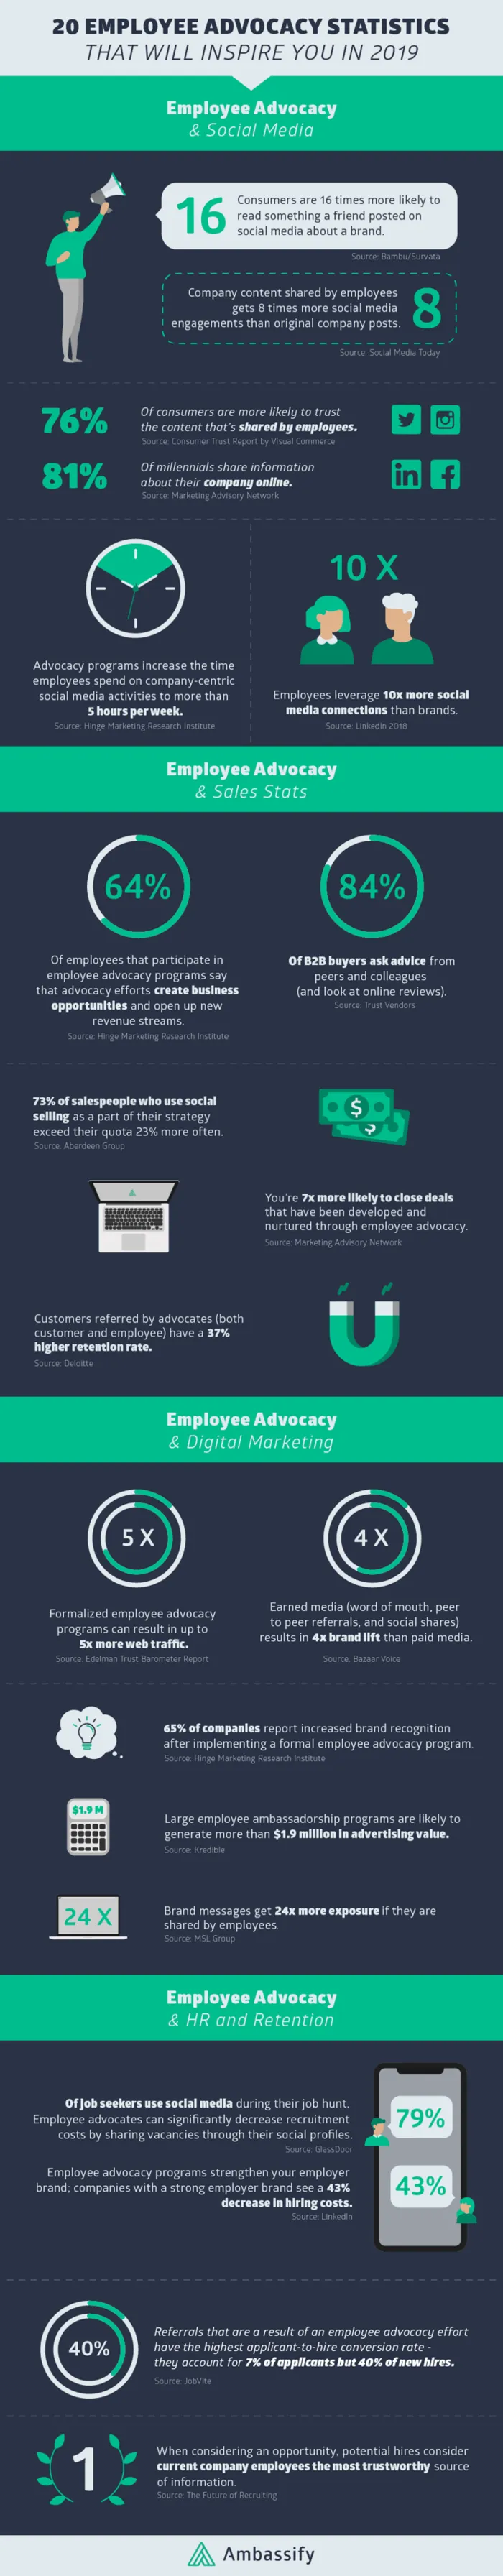 Employee advocacy statistics infographic